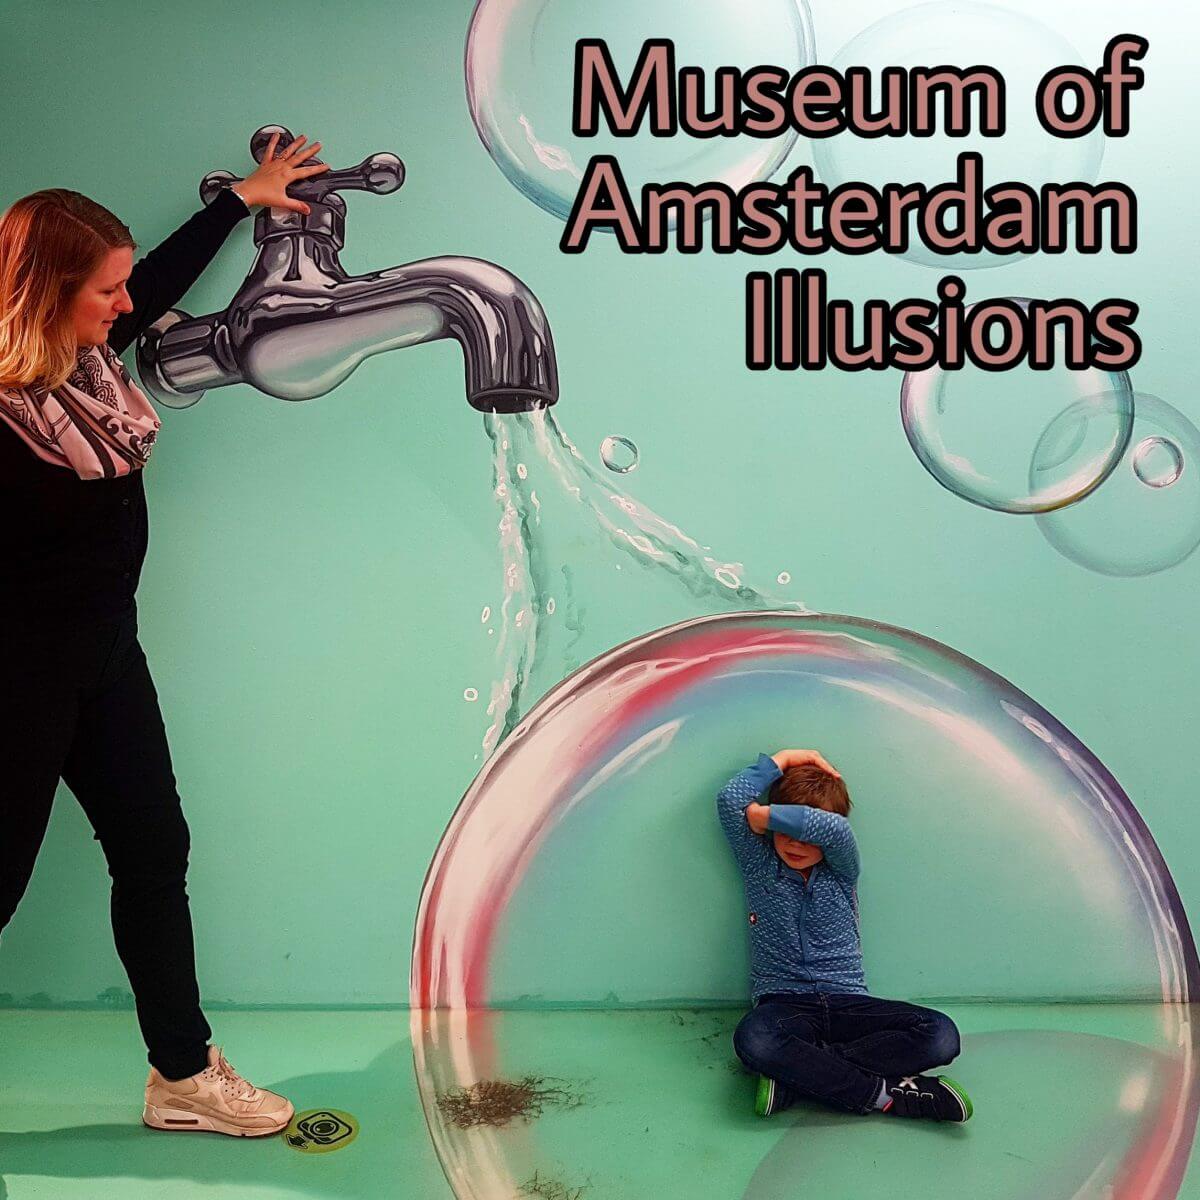 Nieuw uitje voor kids: Museum of Amsterdam Illusions